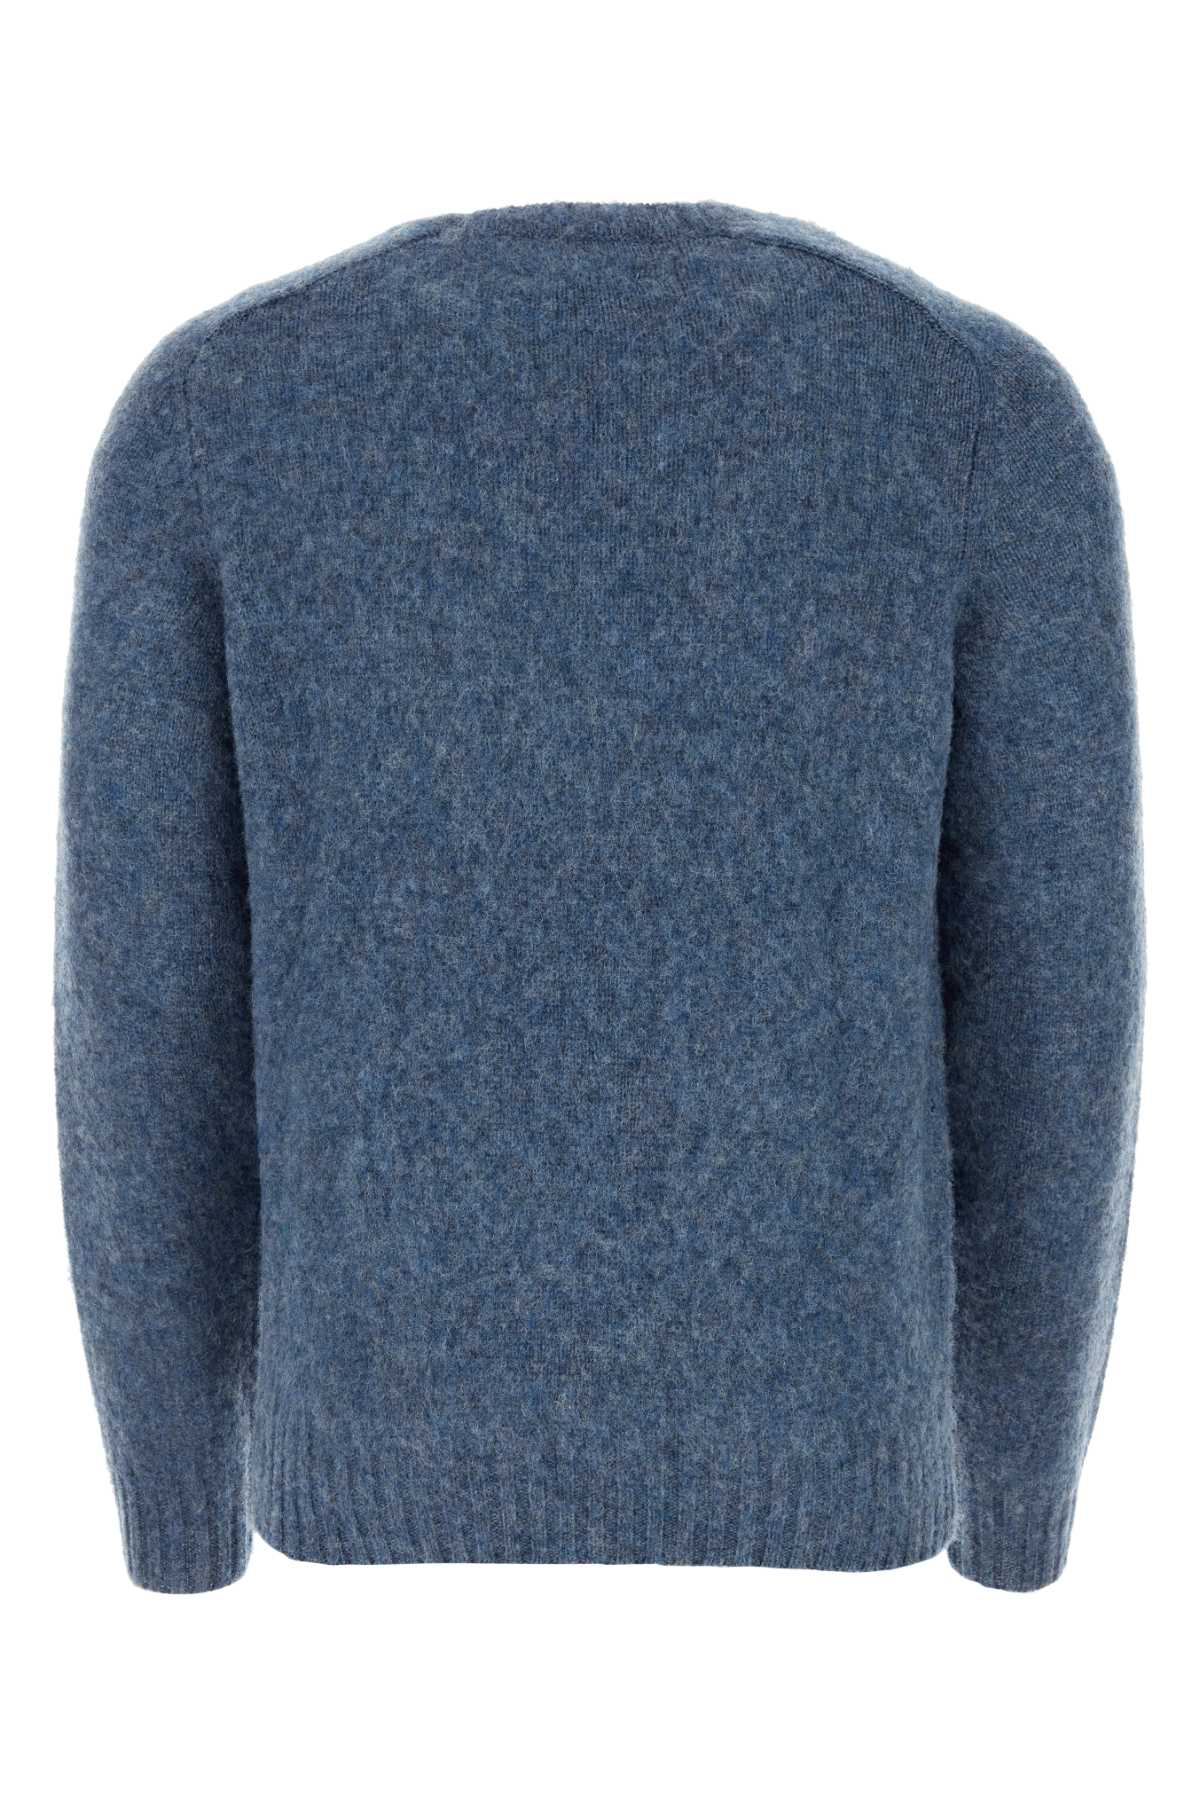 The Harmony Melange Blue Wool Sweater In Bluegrey